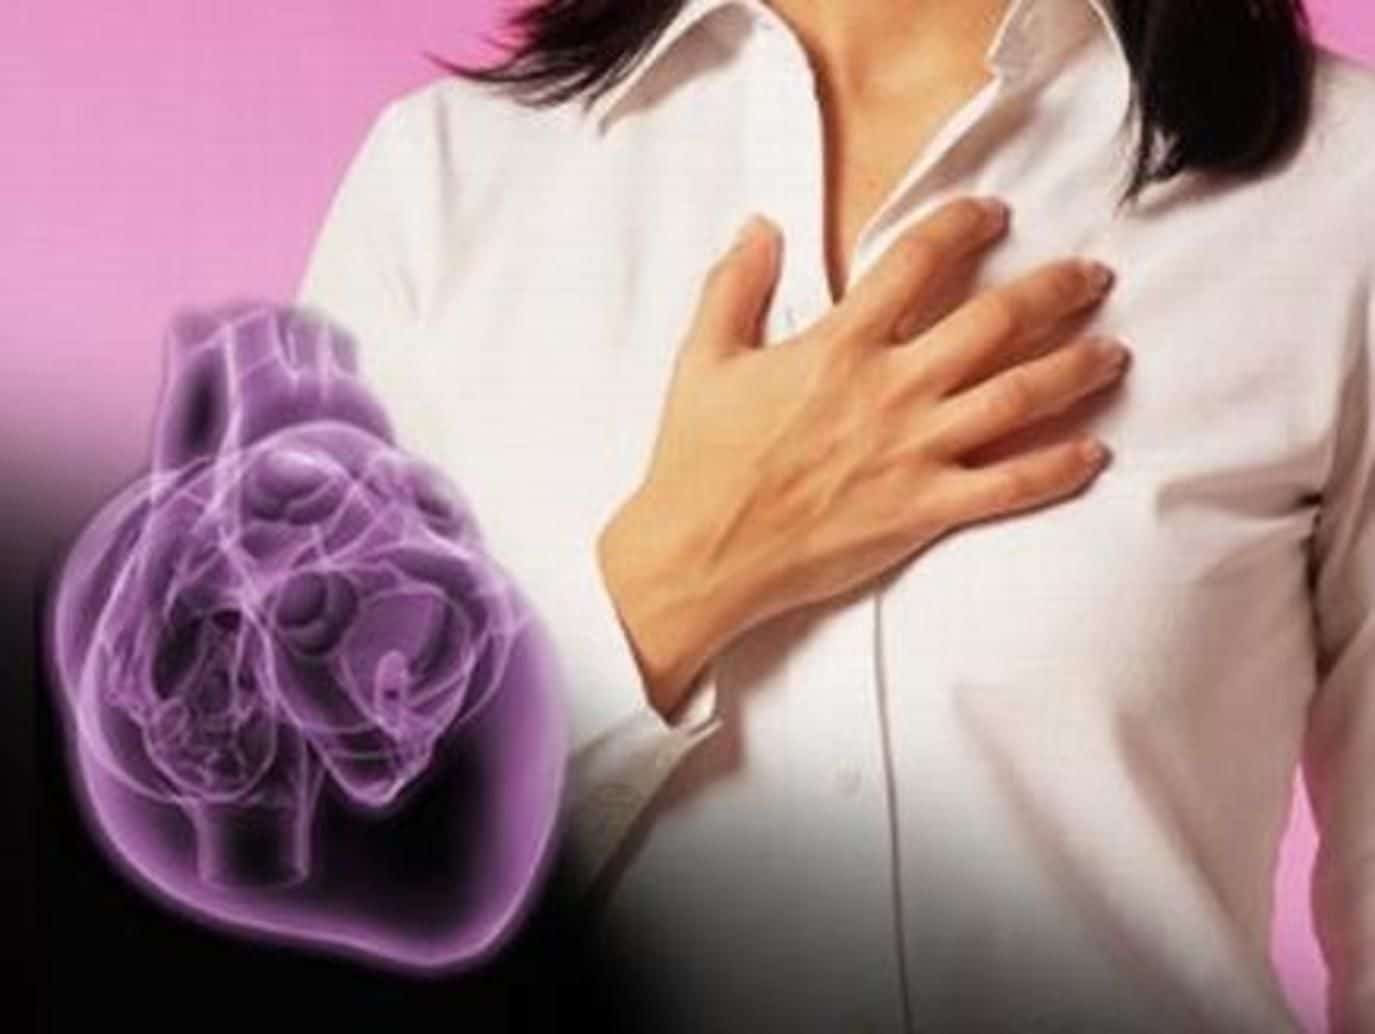 اصابة النساء بأزمات قلبية watanserb.com